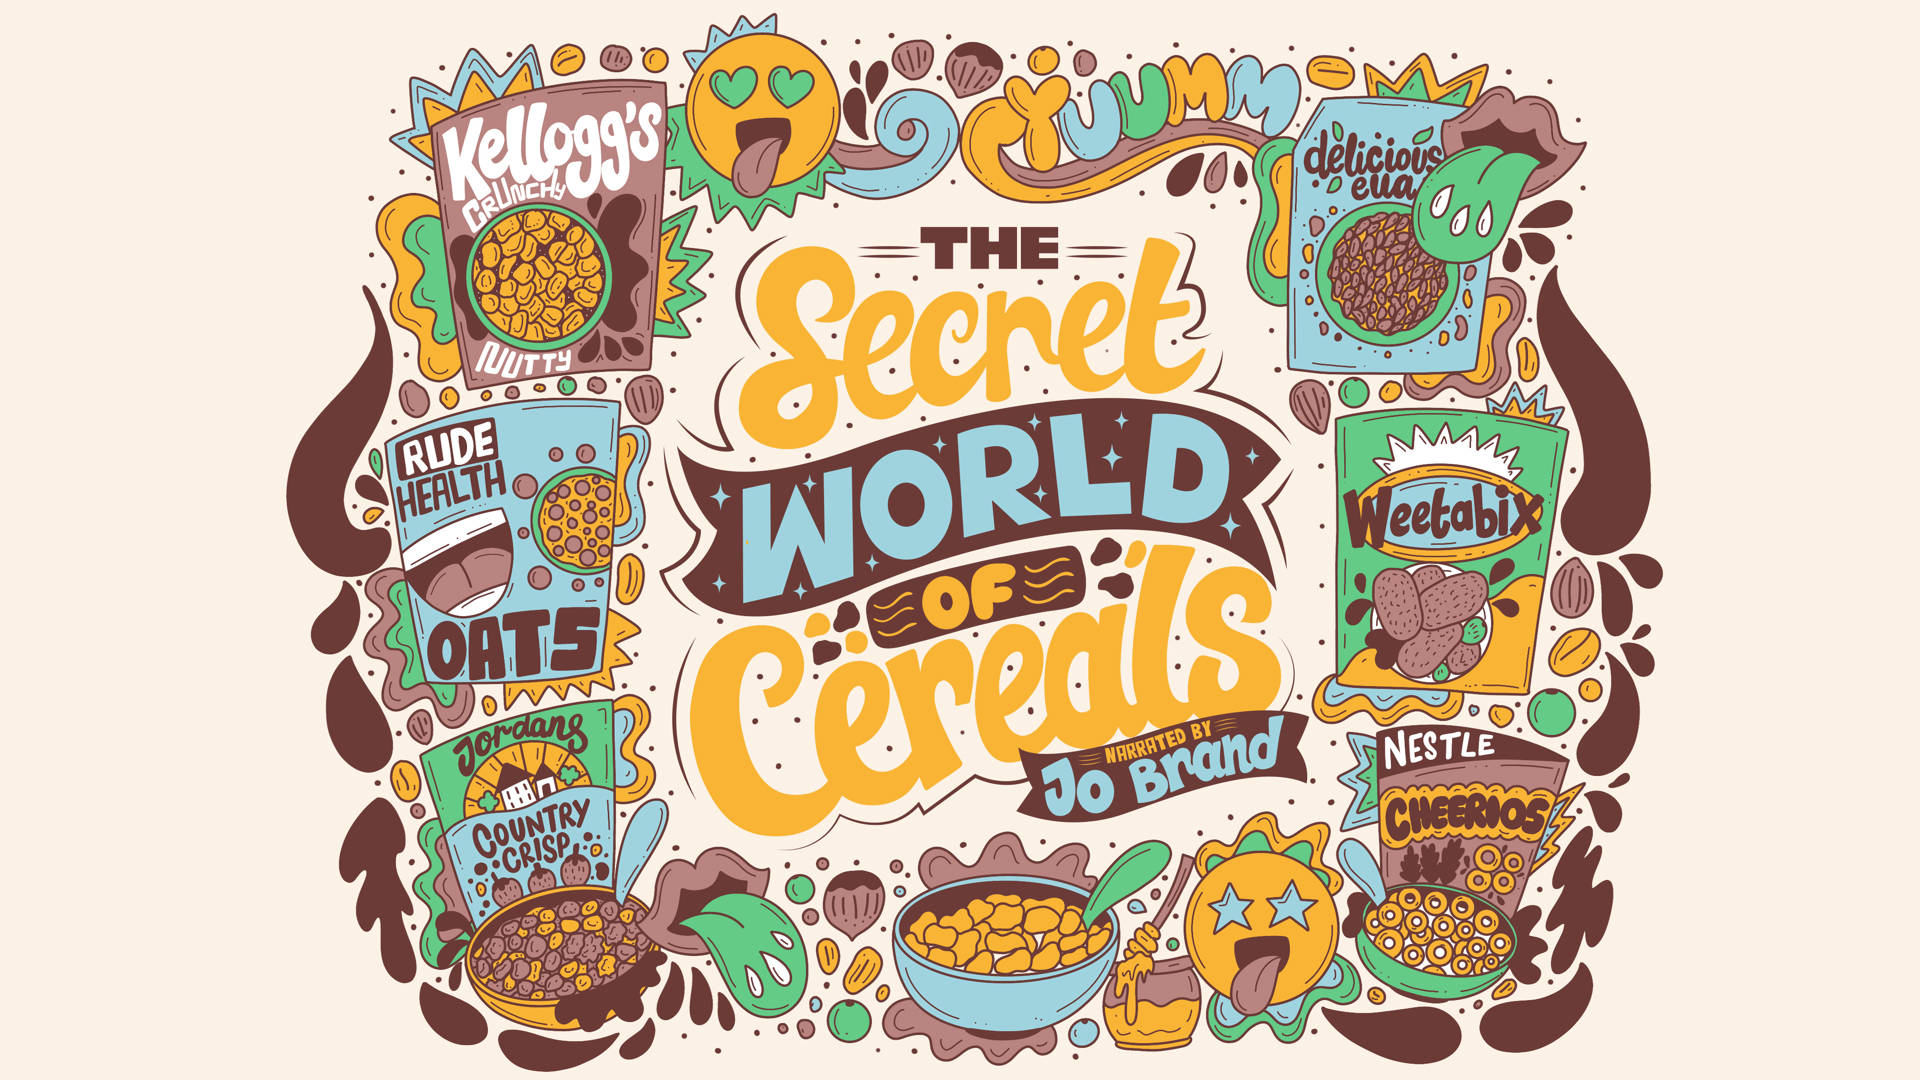 The Secret World of Snacks